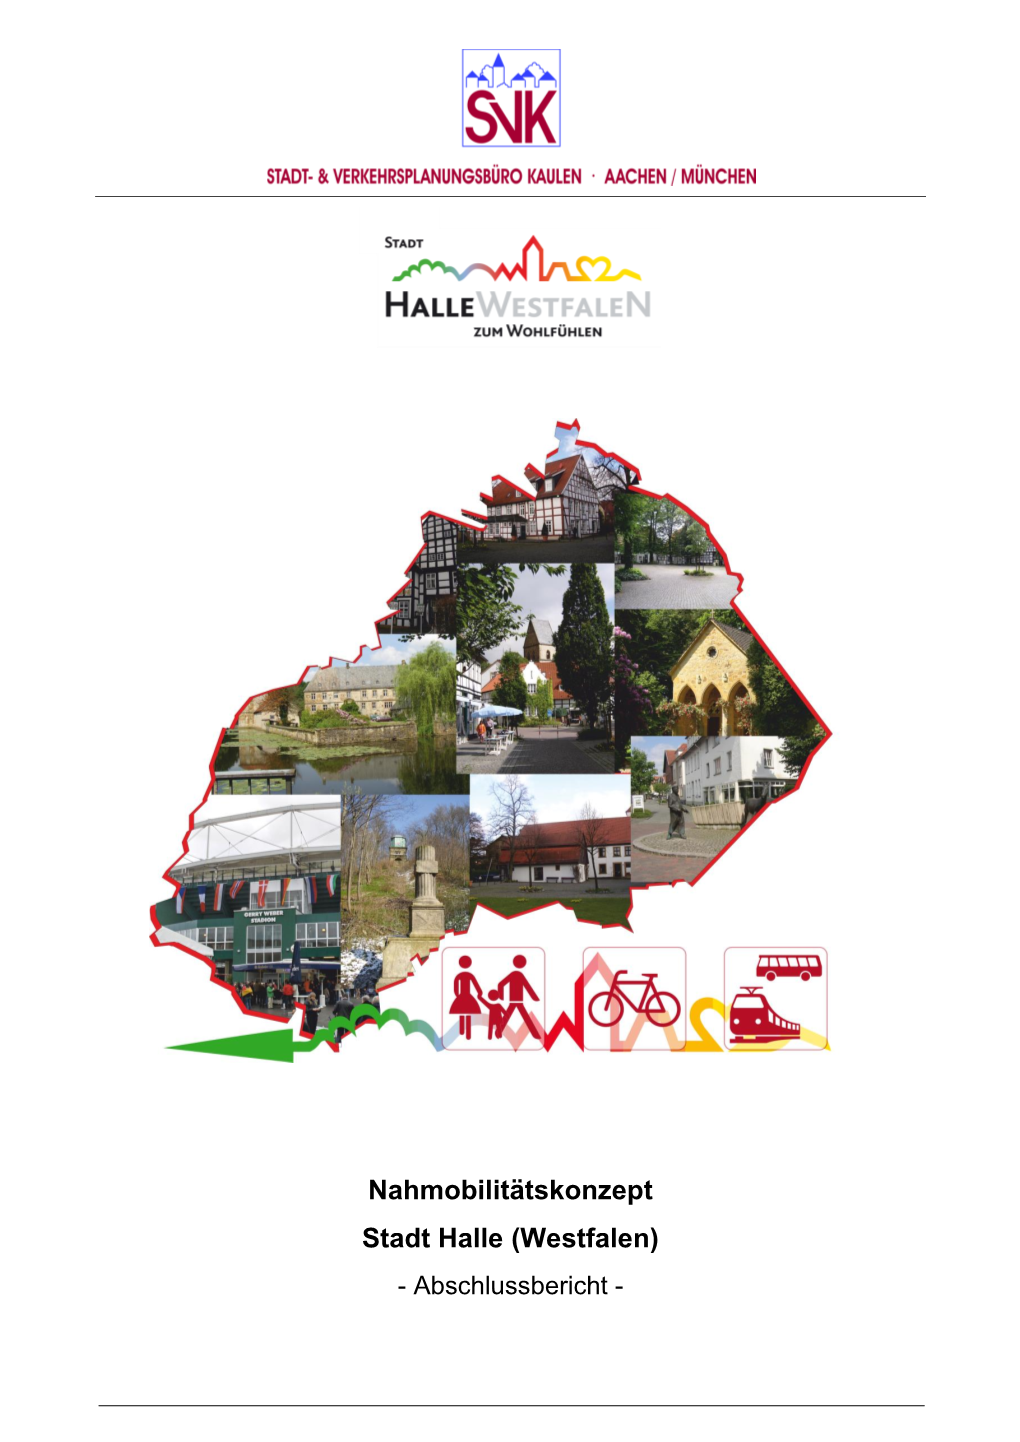 Nahmobilitätskonzept Stadt Halle (Westfalen) - Abschlussbericht